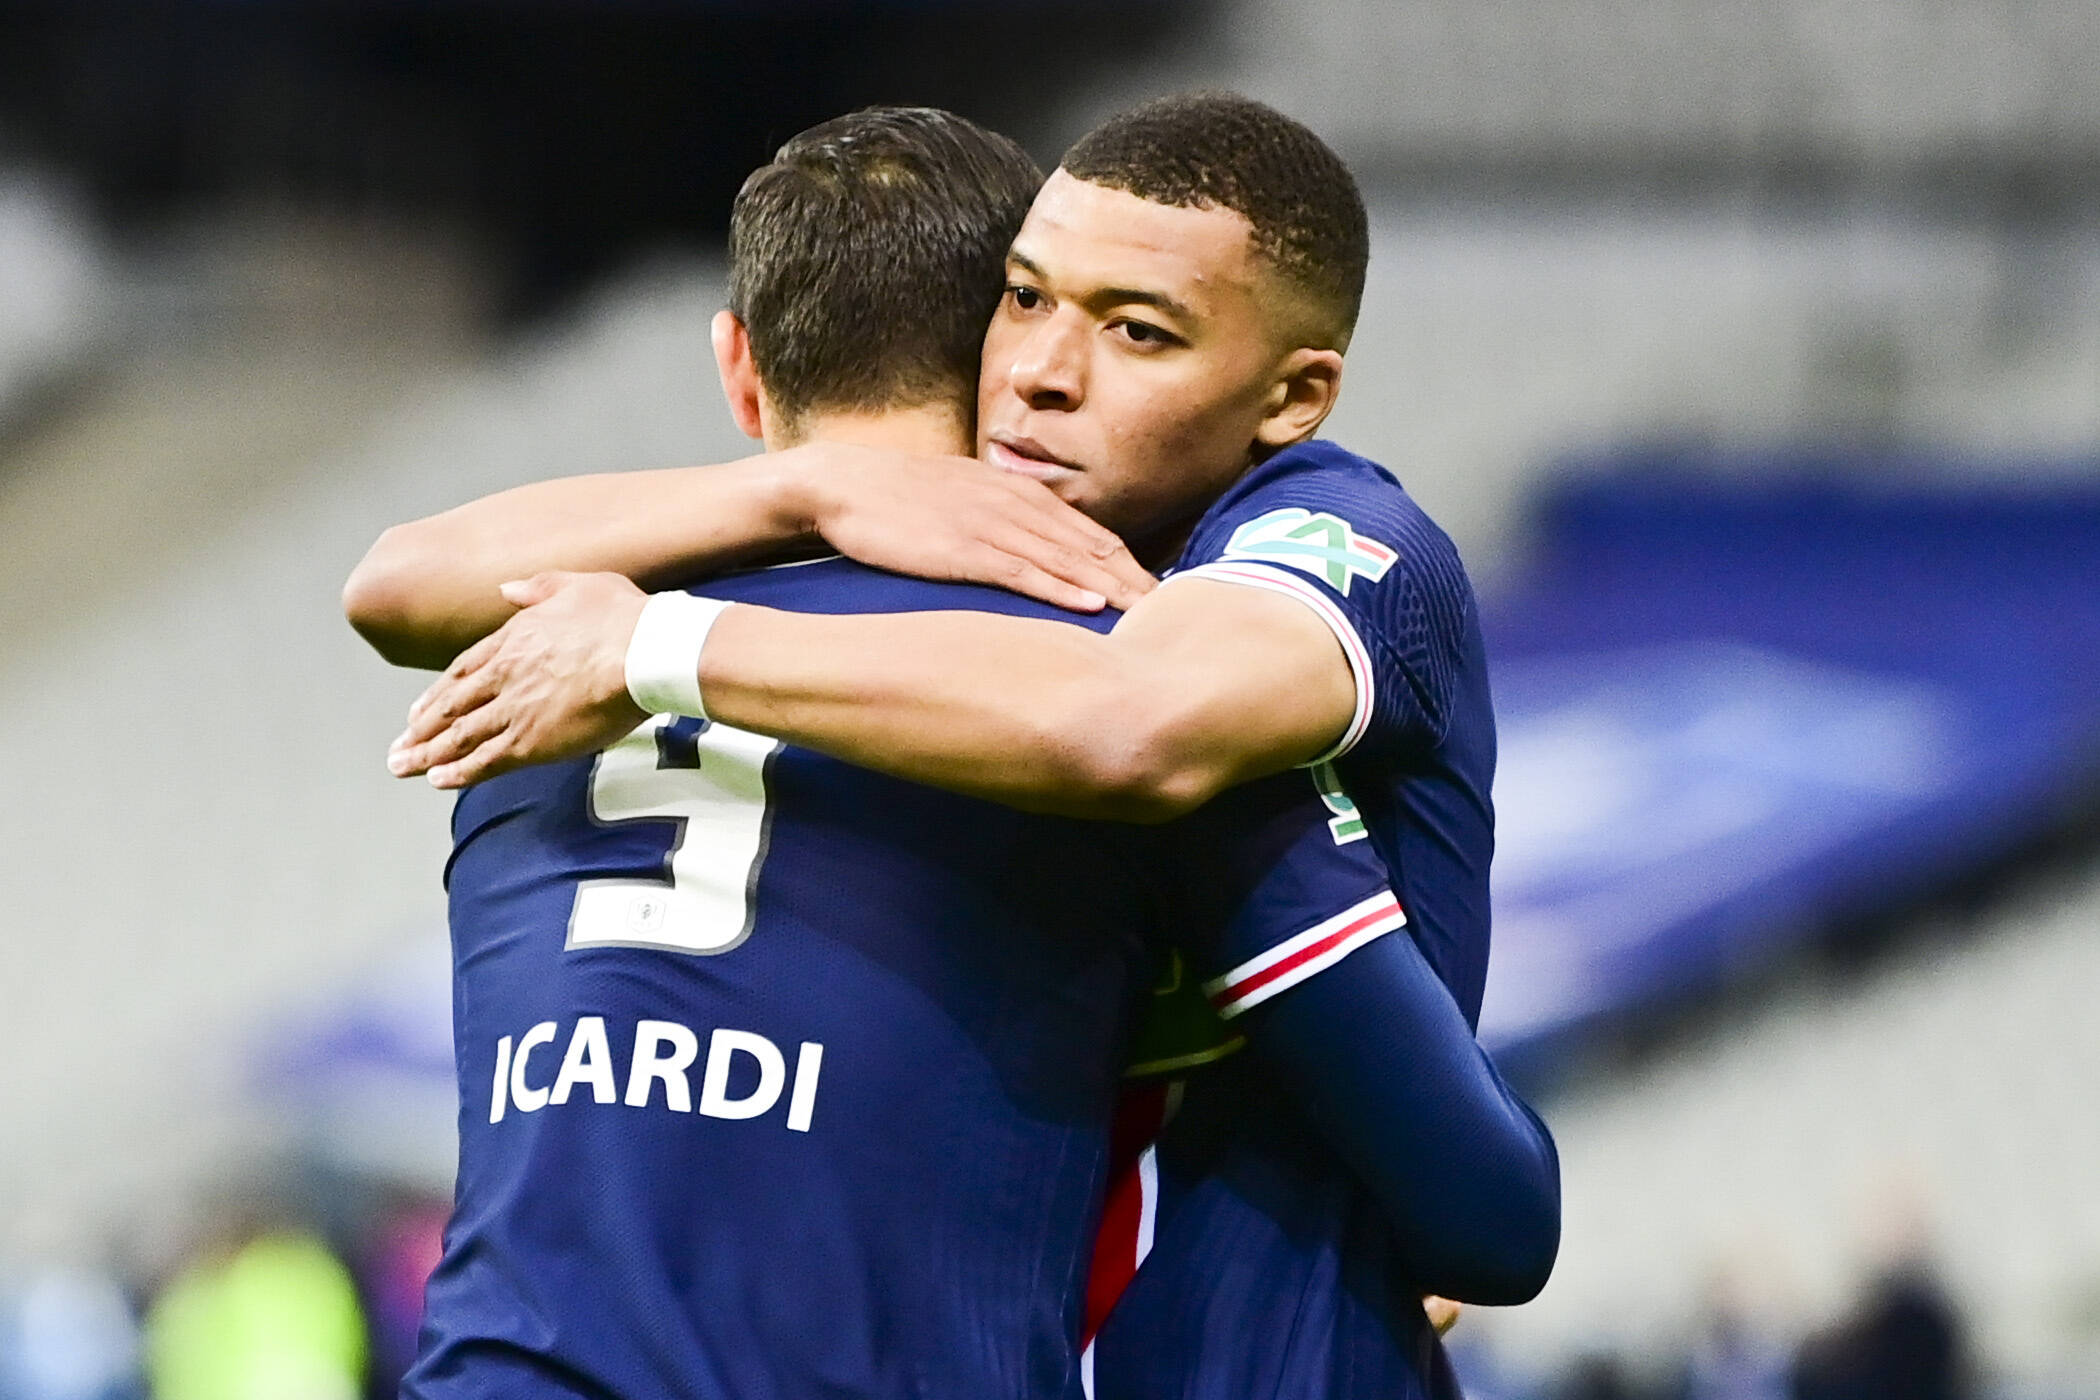 Icardi und Mbappe entscheiden das Coupe-de-France-Finale für PSG gegen Monaco